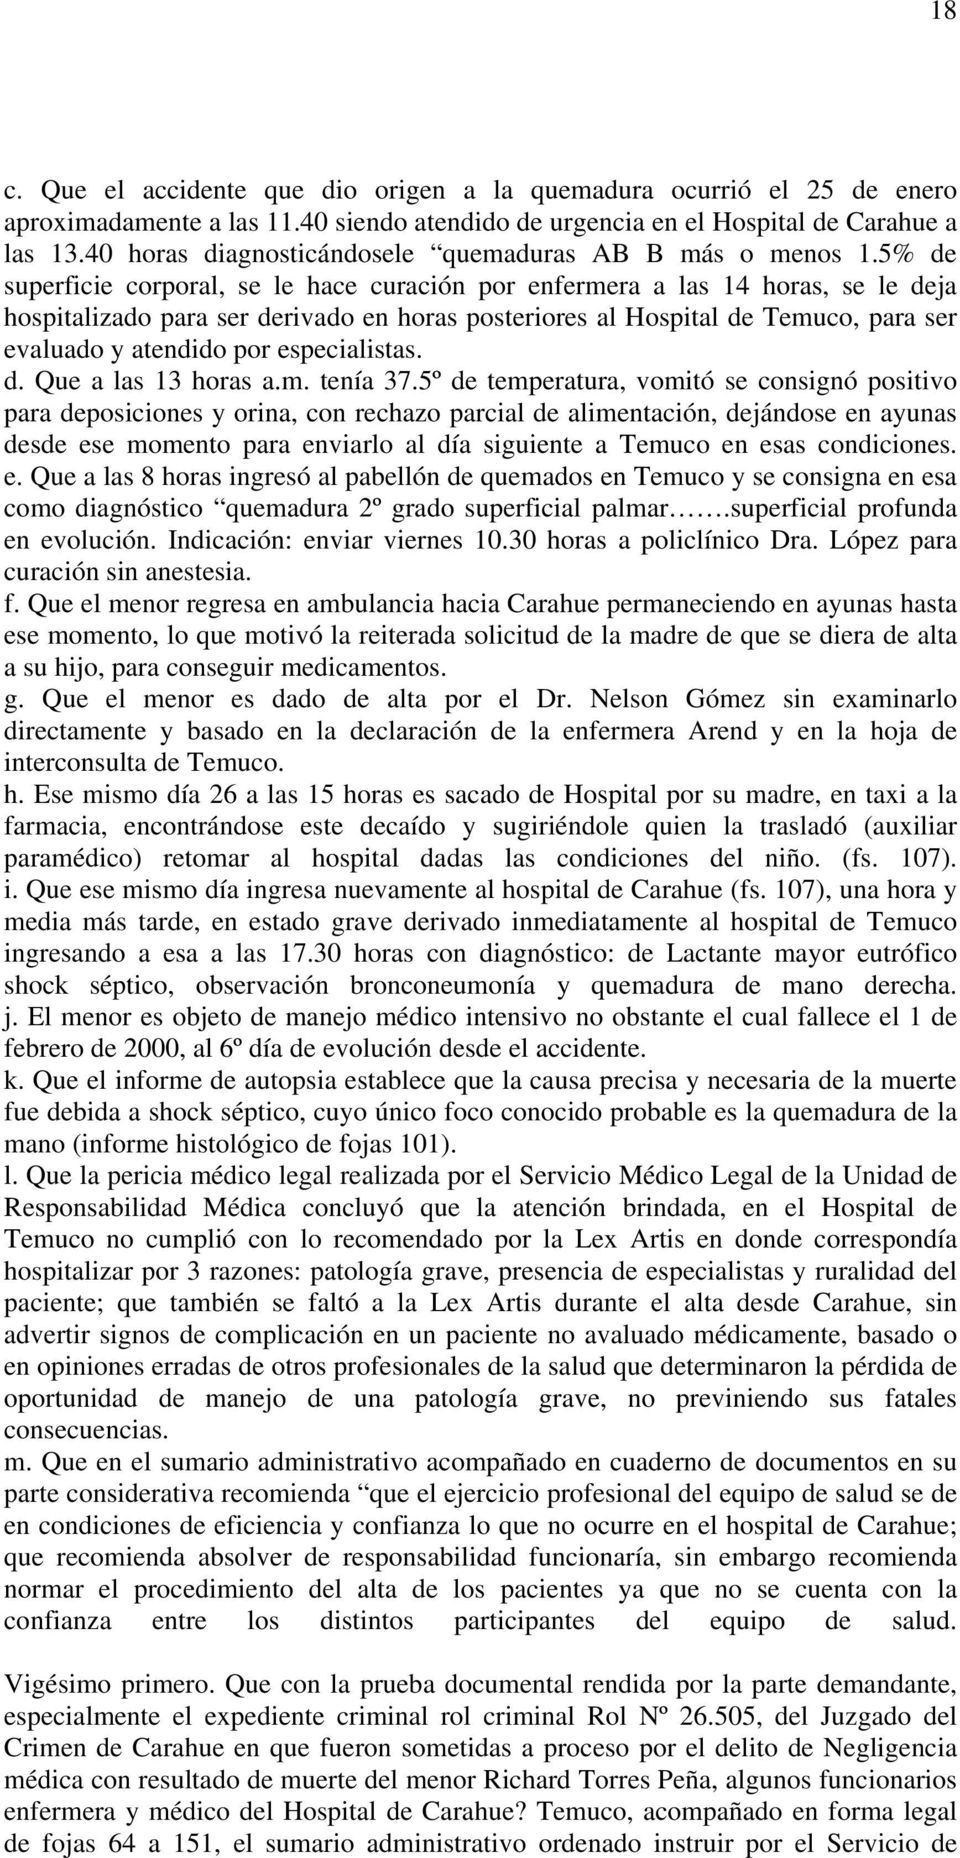 5% de superficie corporal, se le hace curación por enfermera a las 14 horas, se le deja hospitalizado para ser derivado en horas posteriores al Hospital de Temuco, para ser evaluado y atendido por